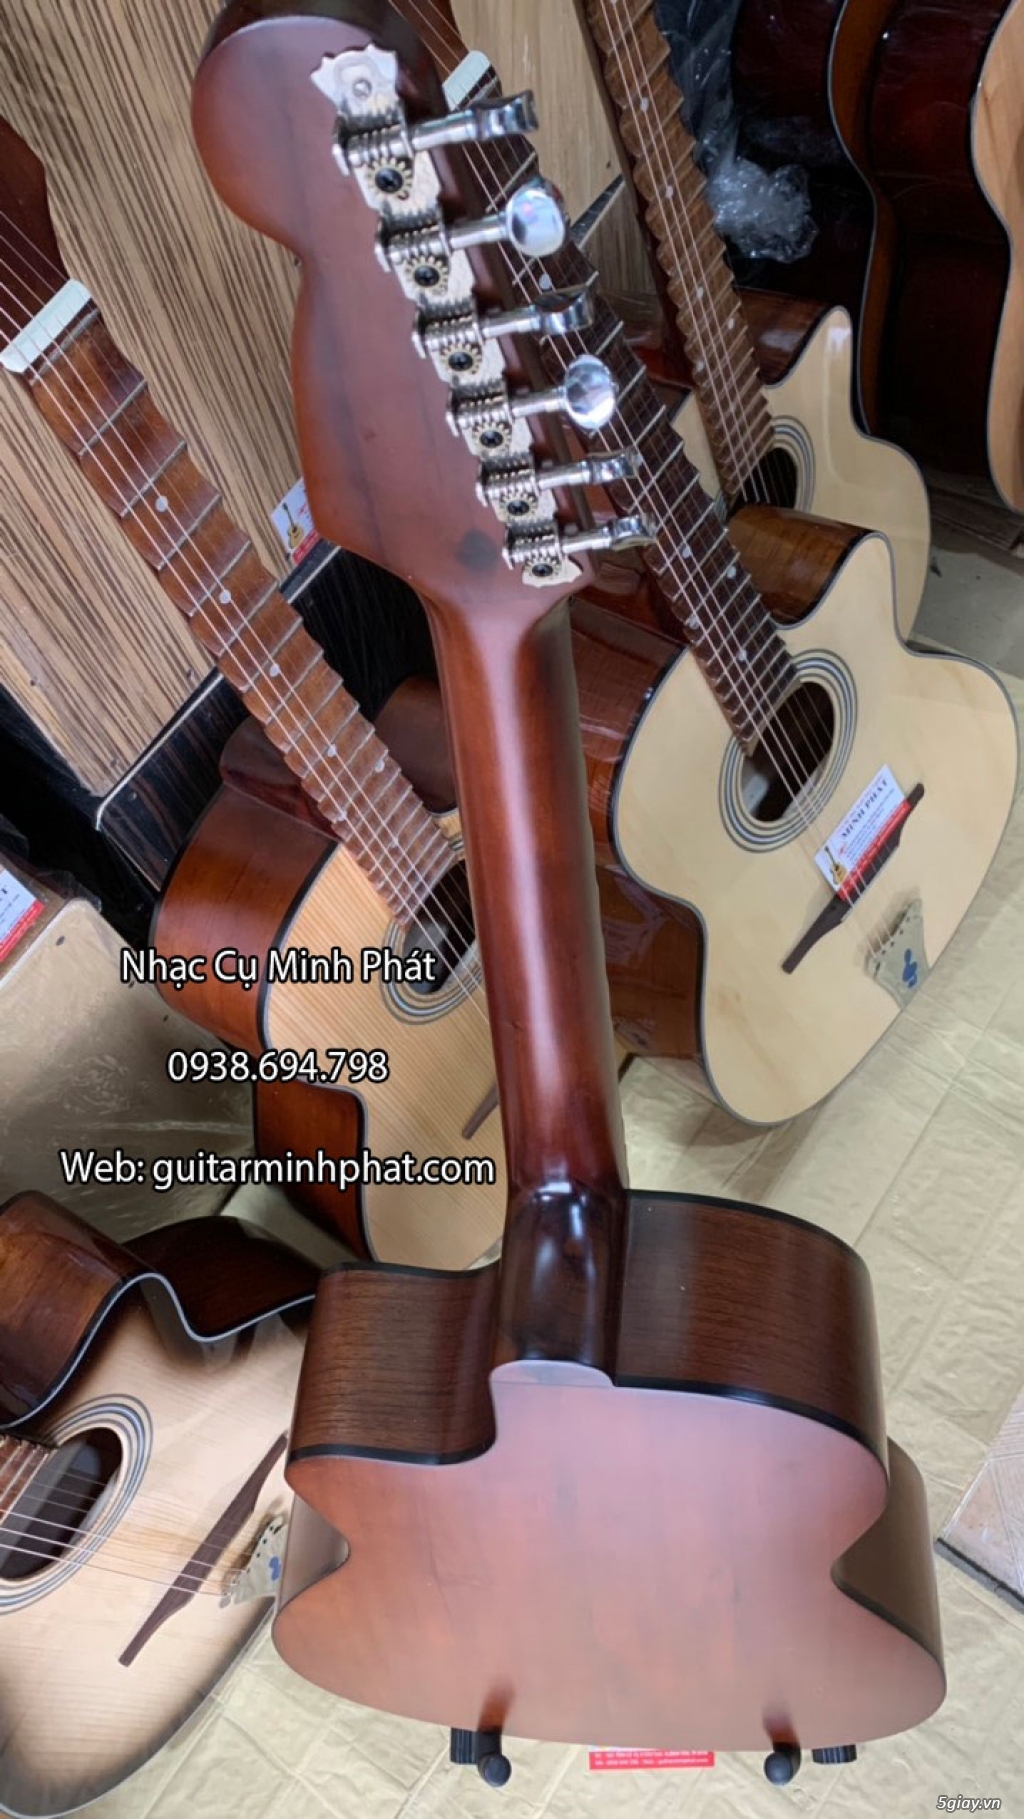 Đàn guitar phím lõm chất lượng uy tín quận Gò Vấp - 1